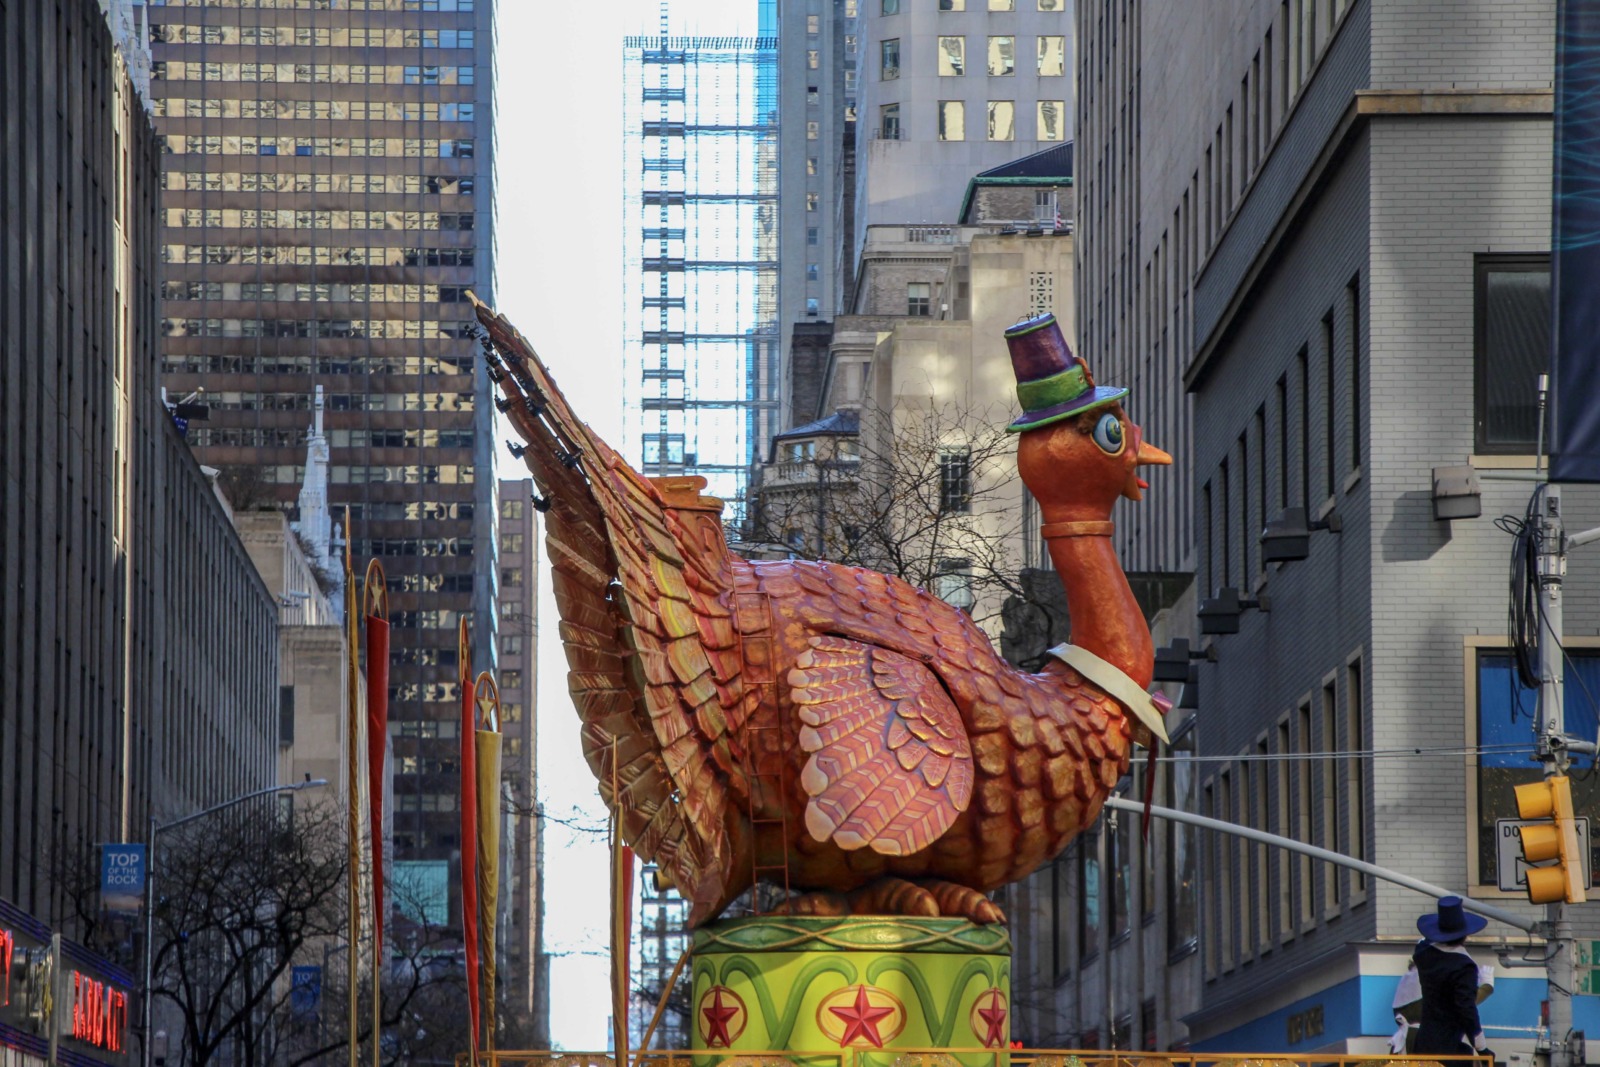 The Turkey at Macys Thanksgiving Day Parade. Photo backfromthefuture via Twenty20